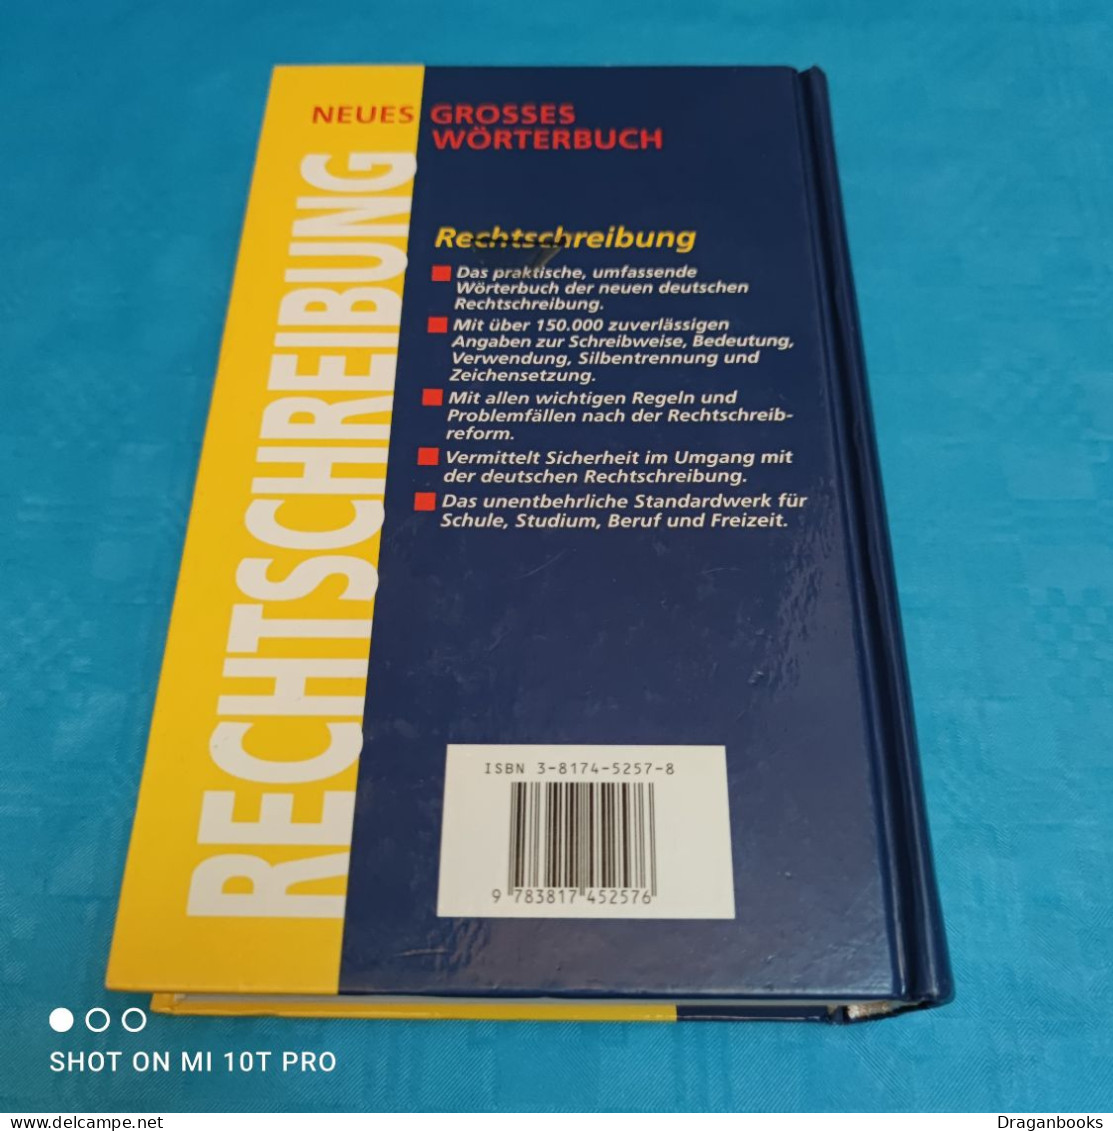 Neues Grosses Wörterbuch Rechtschreibung - Dictionaries